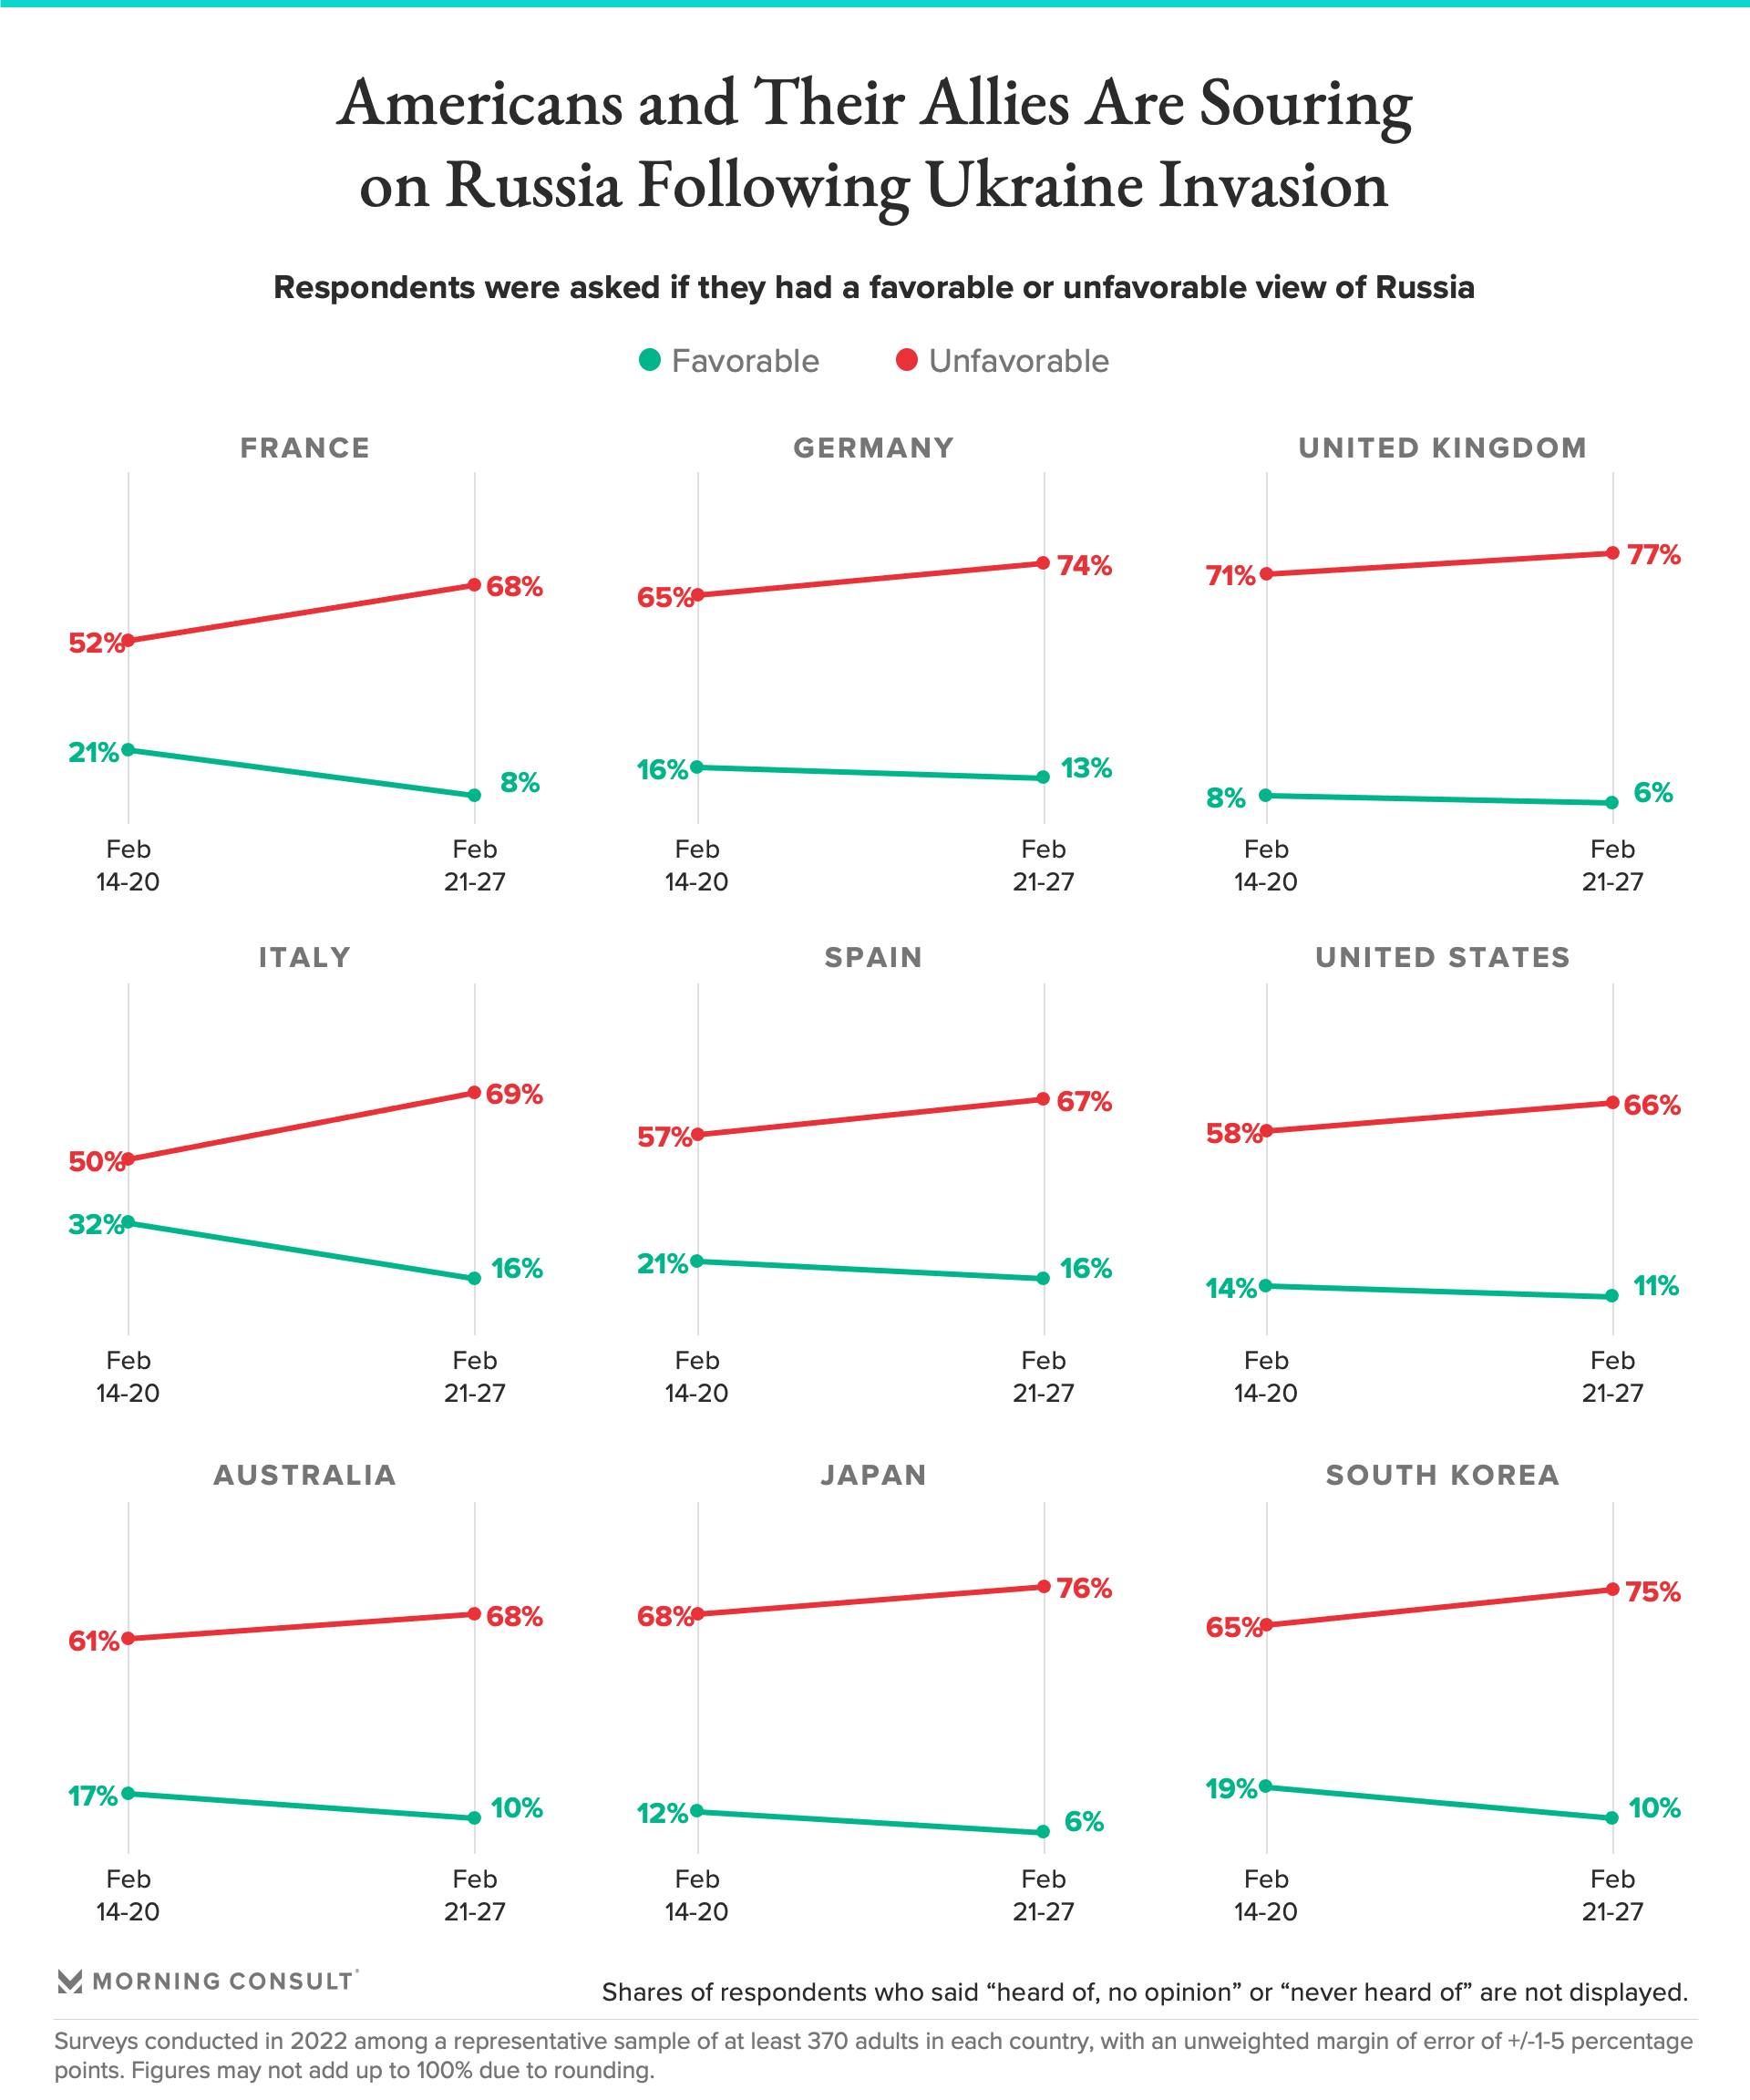 Алфа Рисърч: Рязък спад в доверието на българите към Путин (инфографика)